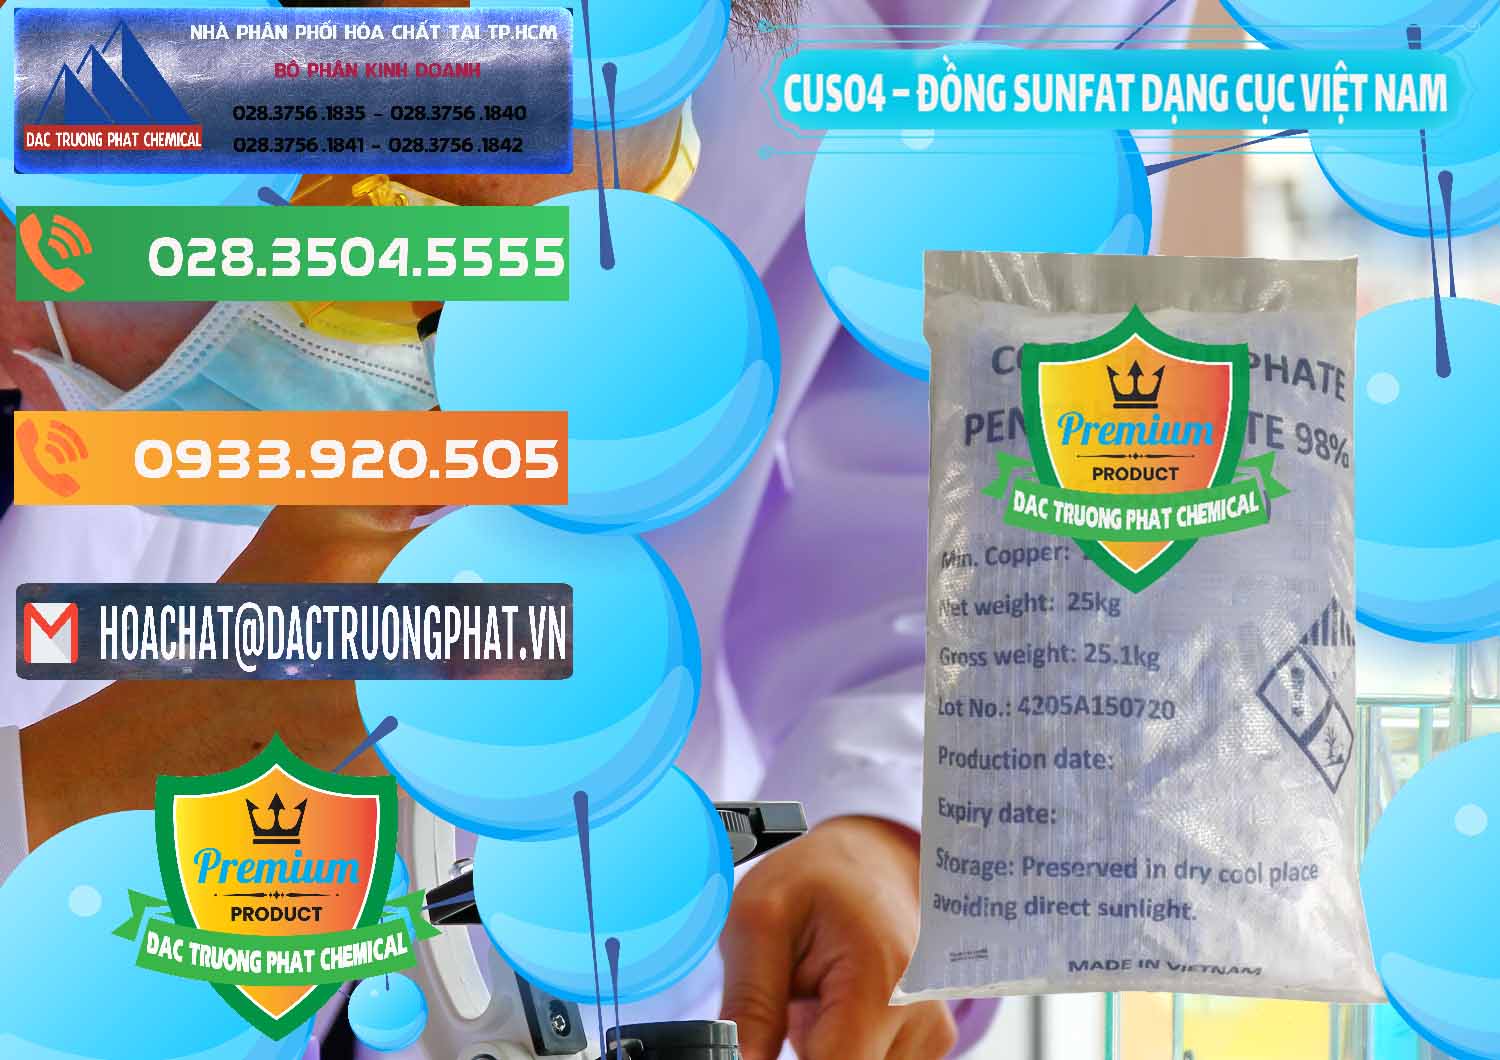 Nơi bán - cung cấp CUSO4 – Đồng Sunfat Dạng Cục Việt Nam - 0303 - Đơn vị phân phối và cung cấp hóa chất tại TP.HCM - hoachatxulynuoc.com.vn